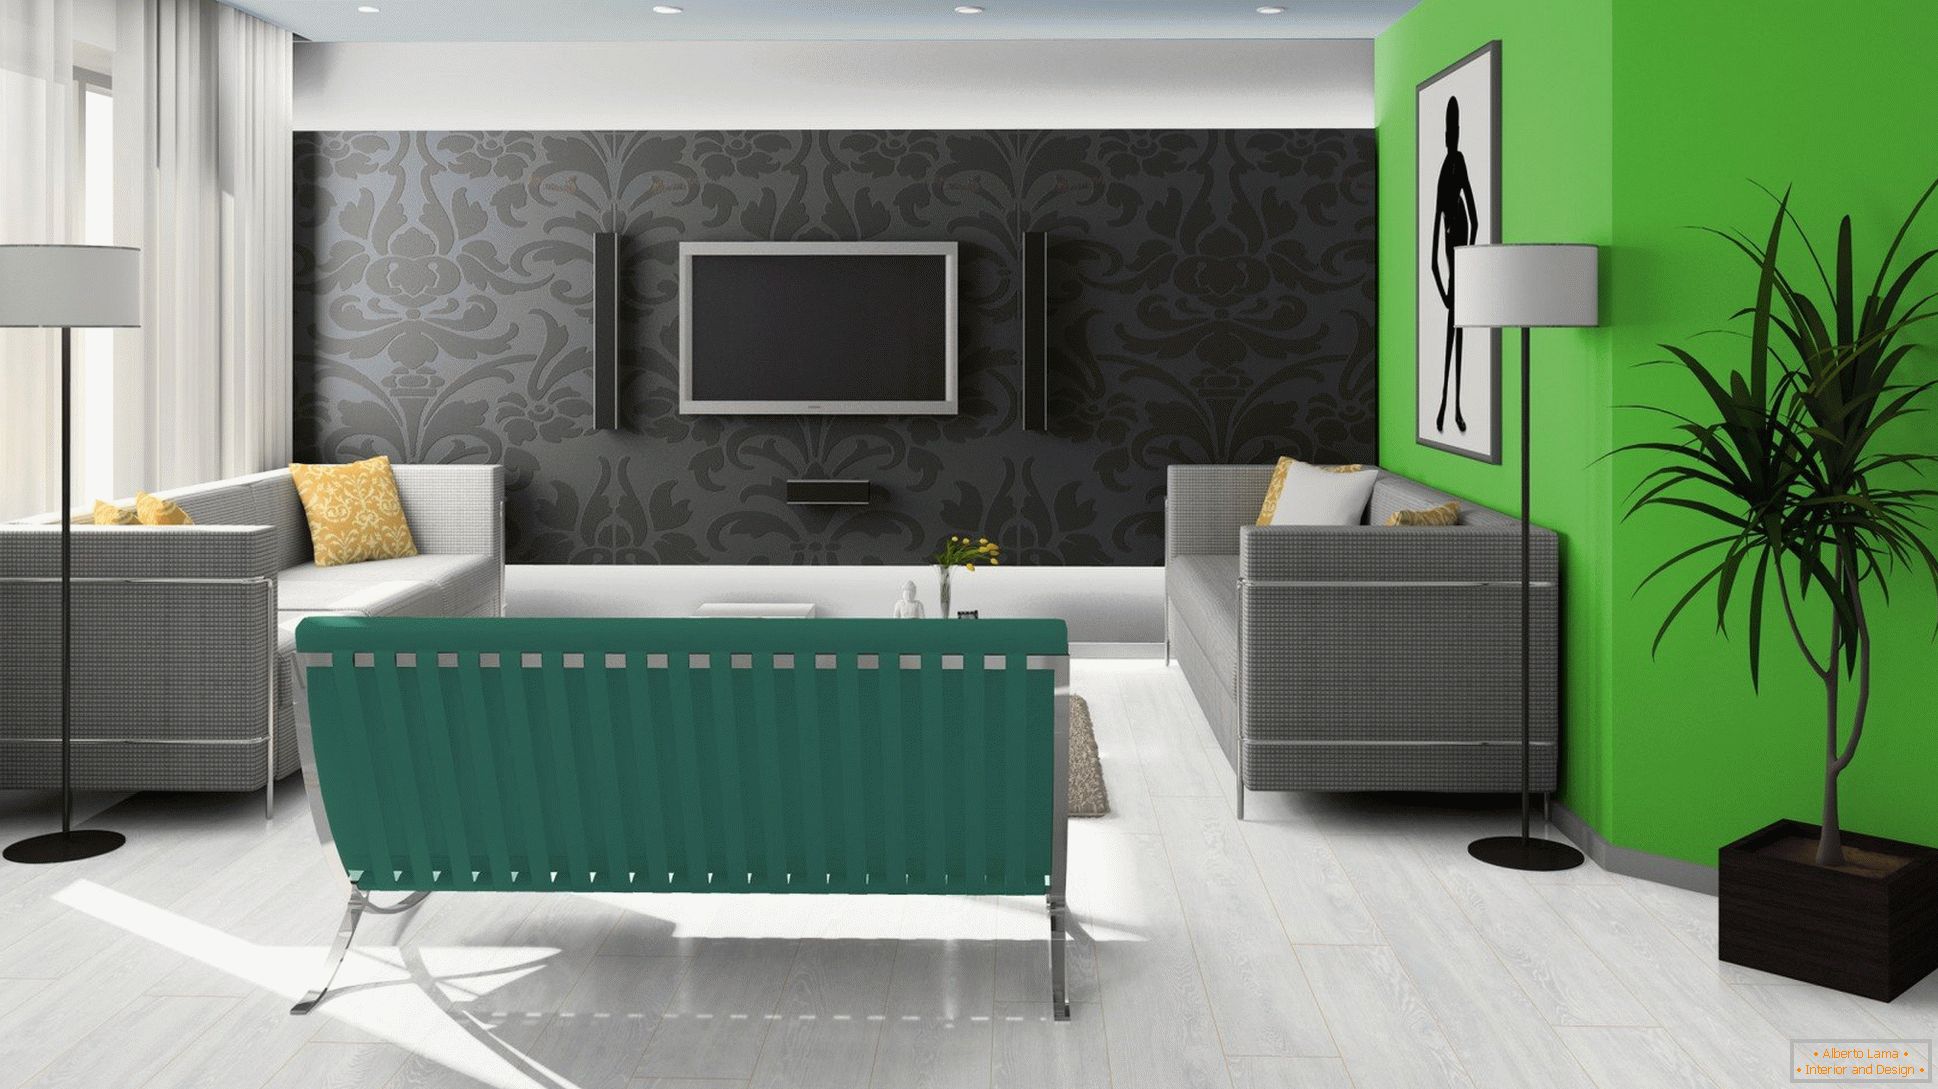 Schwarz, Grün und Weiß im Design des Wohnzimmers